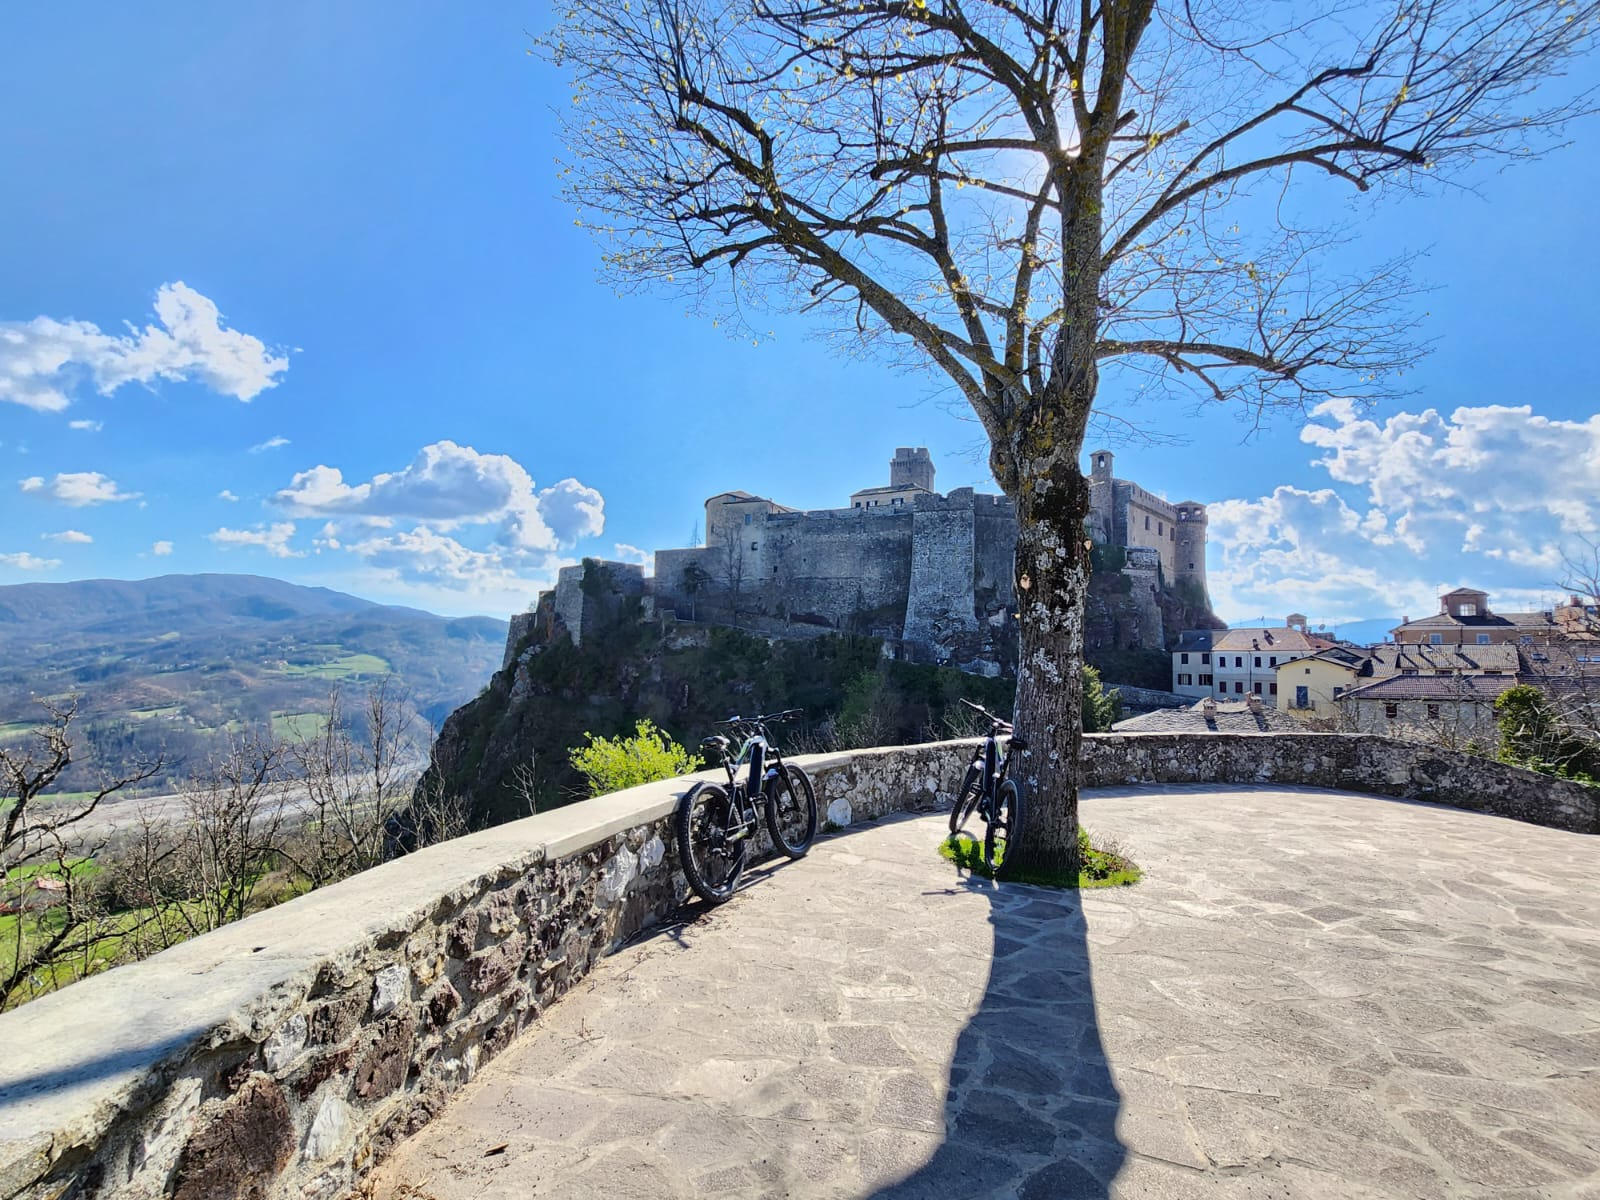 Bardi in bike, un borgo magico tra Via Degli Abati e cascate in alta Val Ceno - Emilia Bike Experience